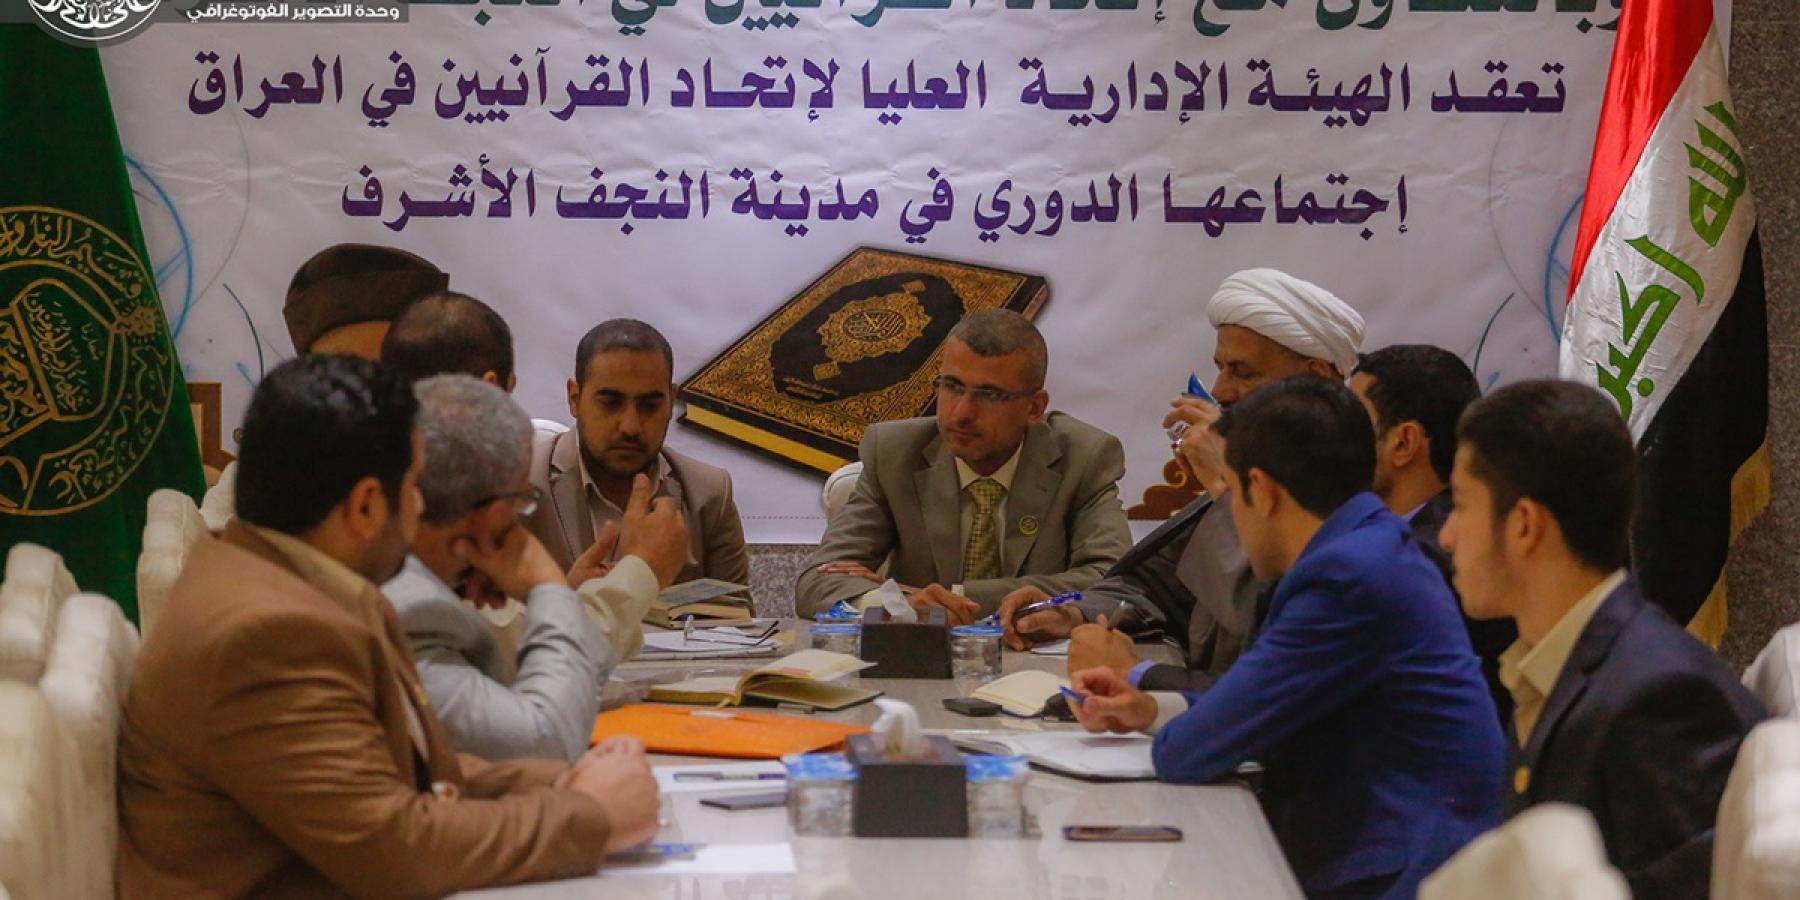 العتبة العلوية المقدسة تحتضن الإجتماع الدوري لإتحاد القرآنيين في العراق